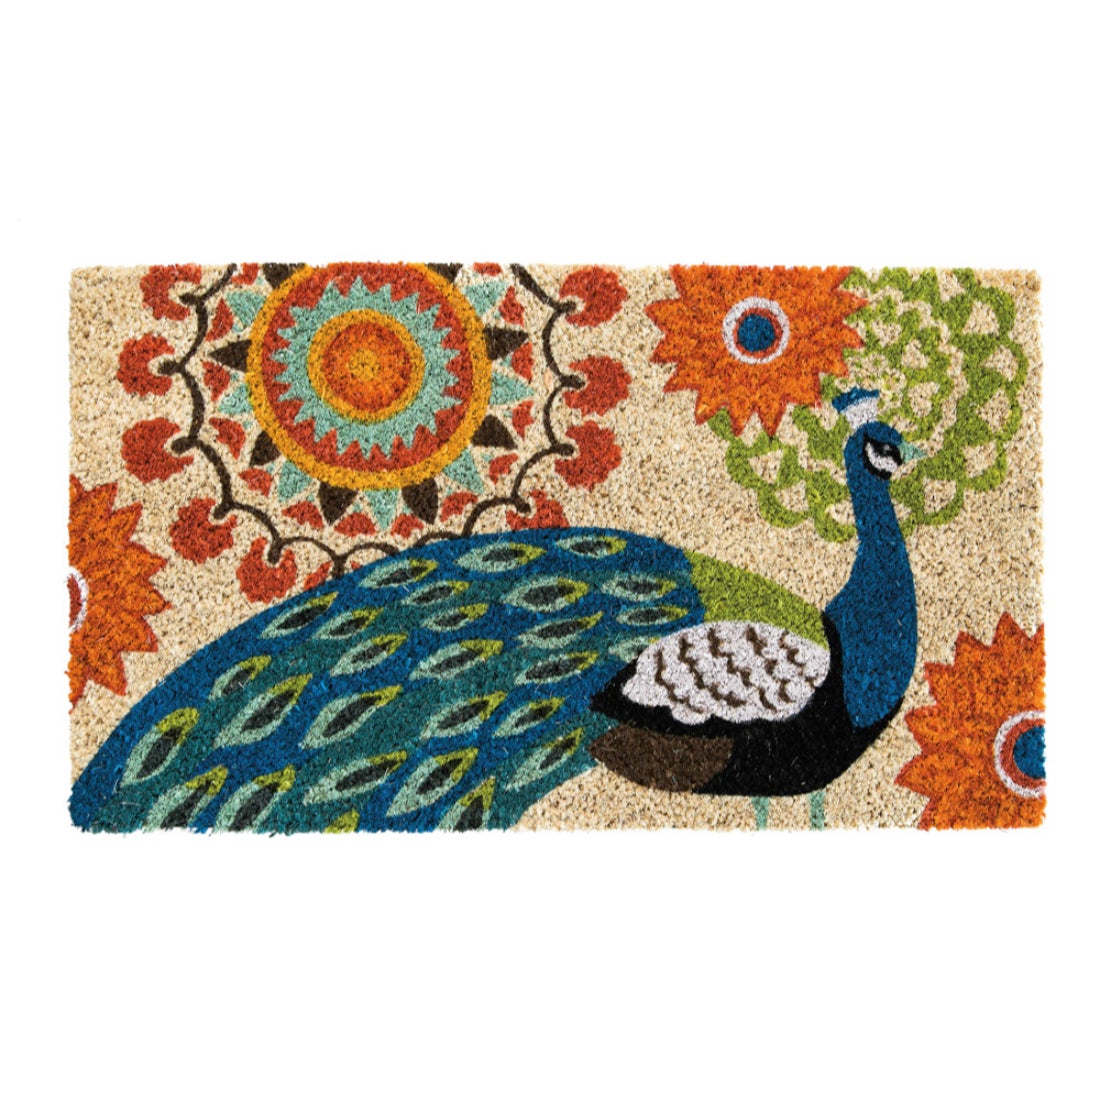 Proud Peacocks Welcome Coir Doormat